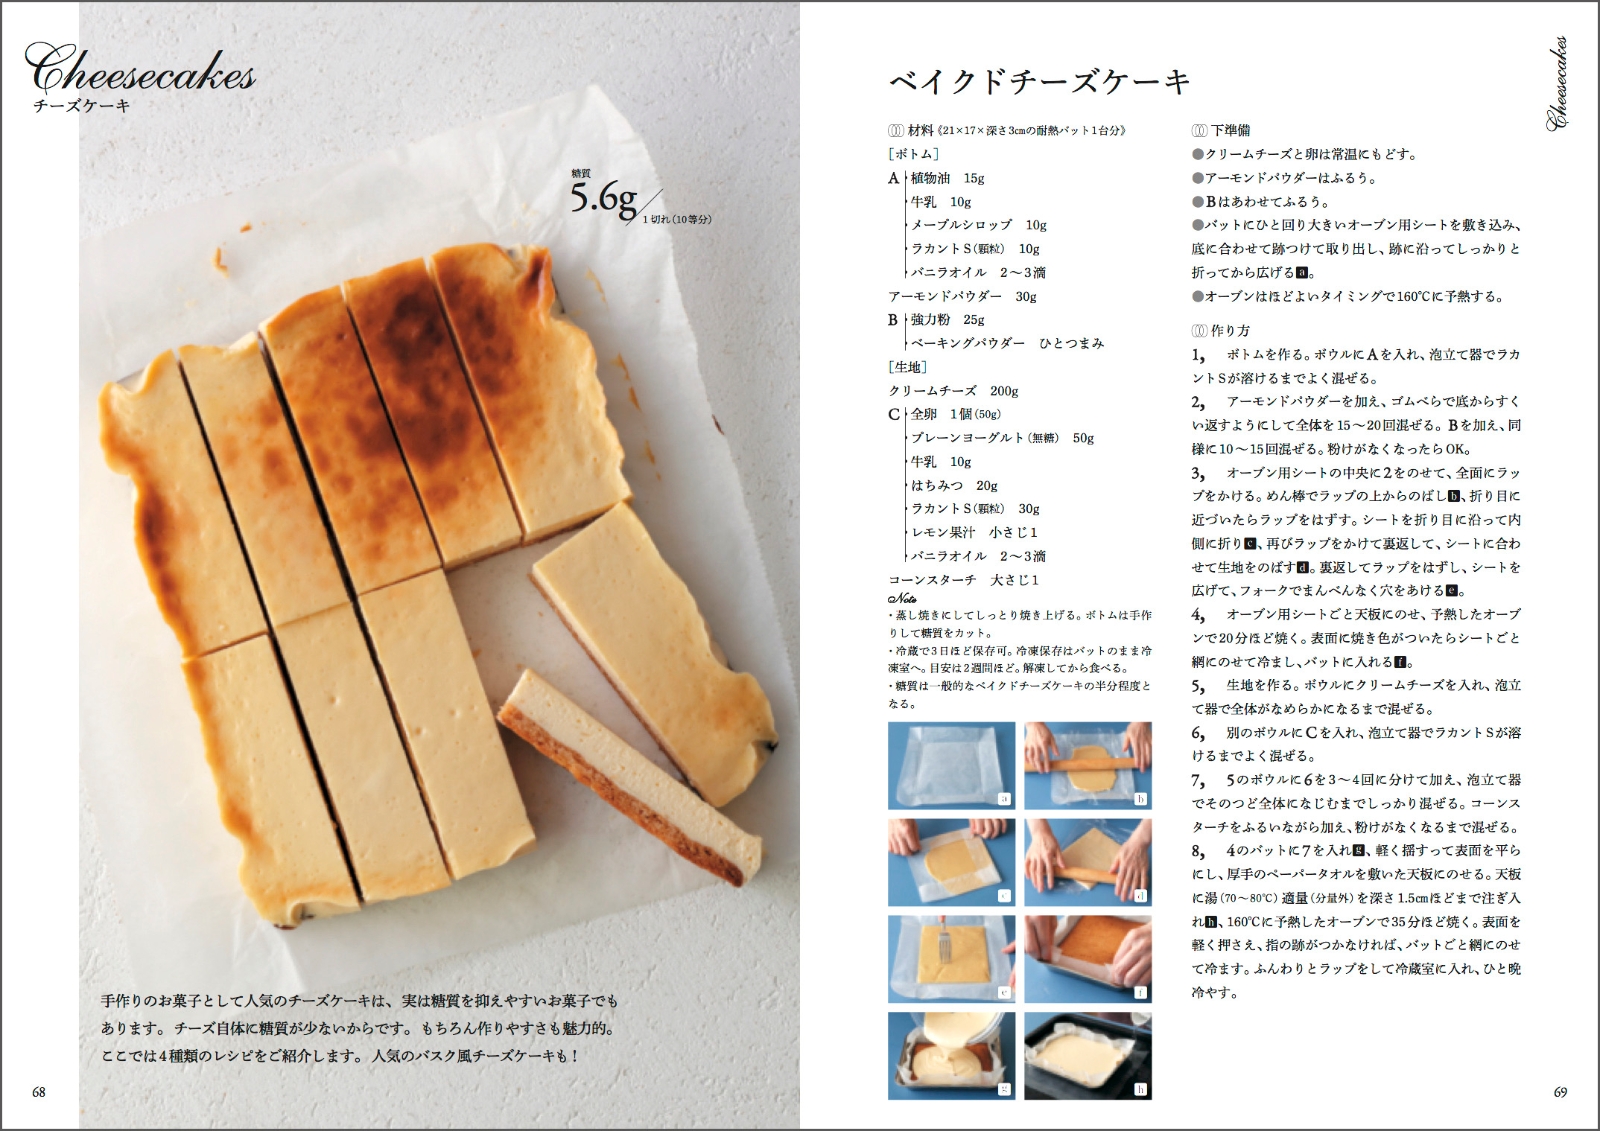 楽天ブックス ゼロ シュガー ケーキ 砂糖を使わずに作る 甘くておいしい糖質オフのお菓子のレシピ 吉川 文子 本